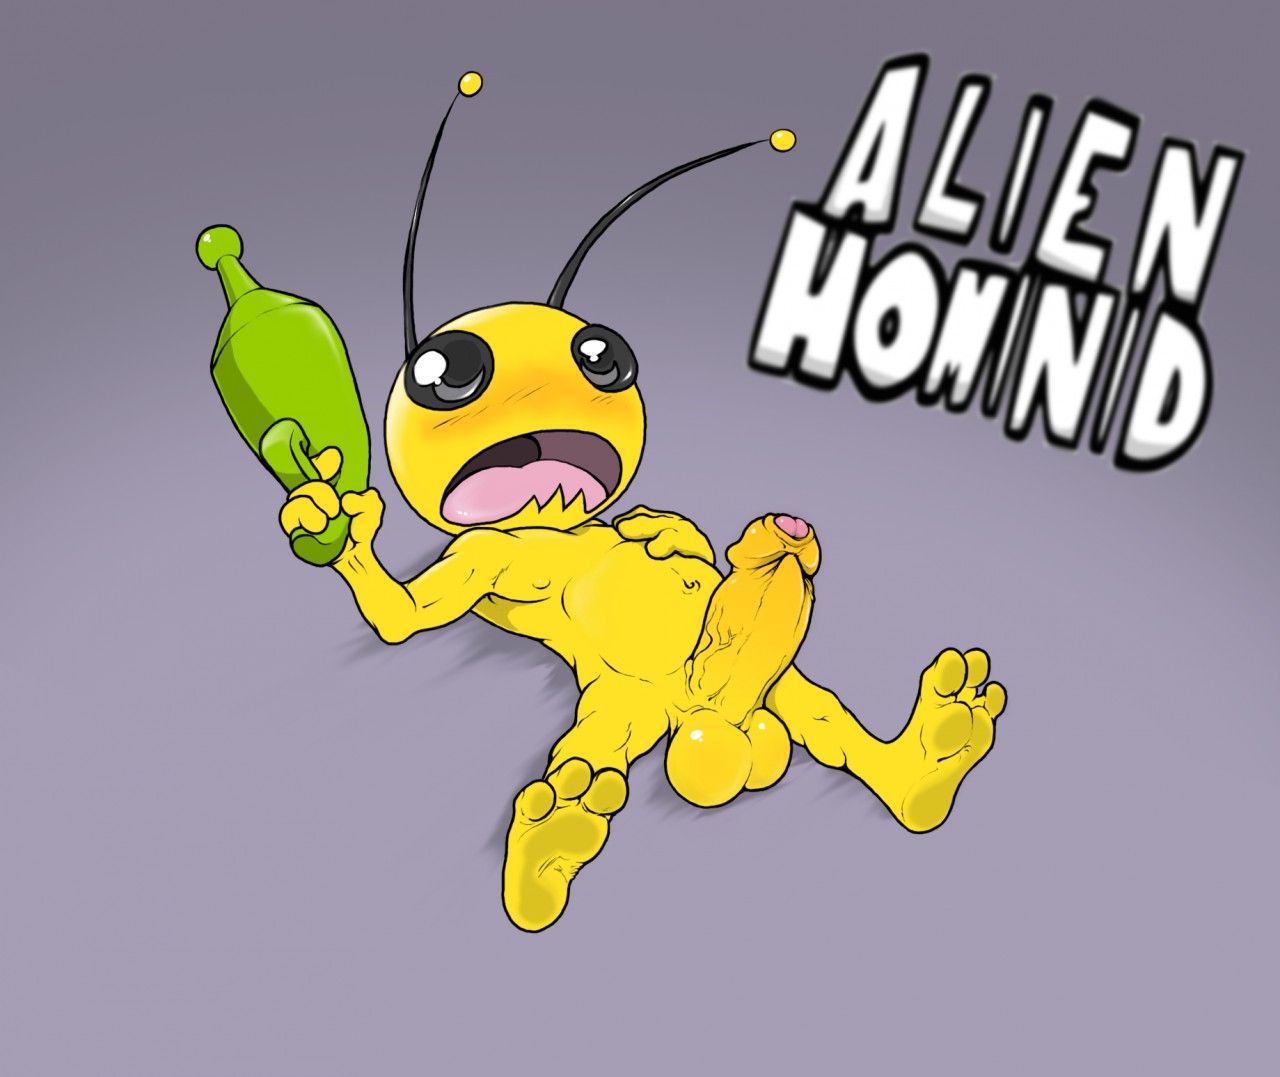 Alien Hominid 9